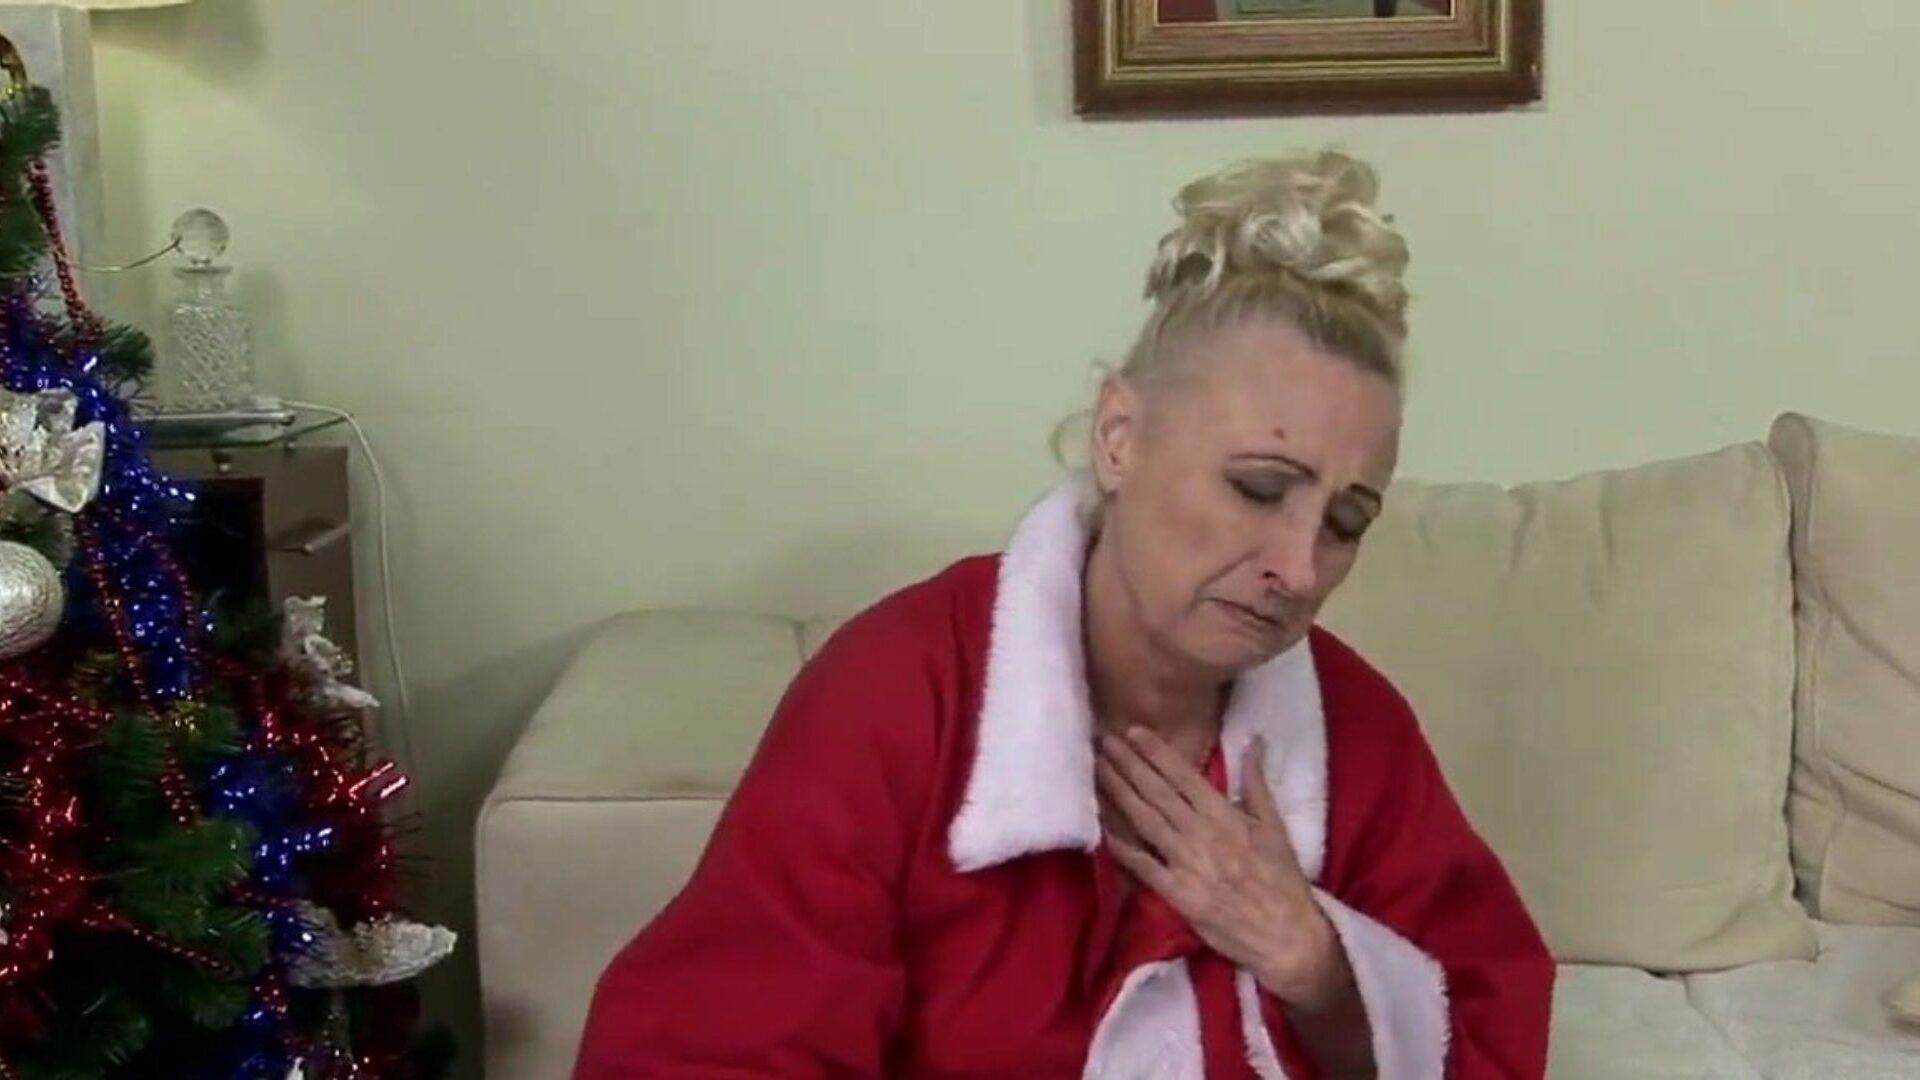 bestemor vil ikke tilbringe julen alene: gratis porno e8 se bestemor vil ikke bruke julen alene filmscene på xhamster - det ultimate arkivet med gratis bestemor og bestemor gratis kanal hd porno tube vids